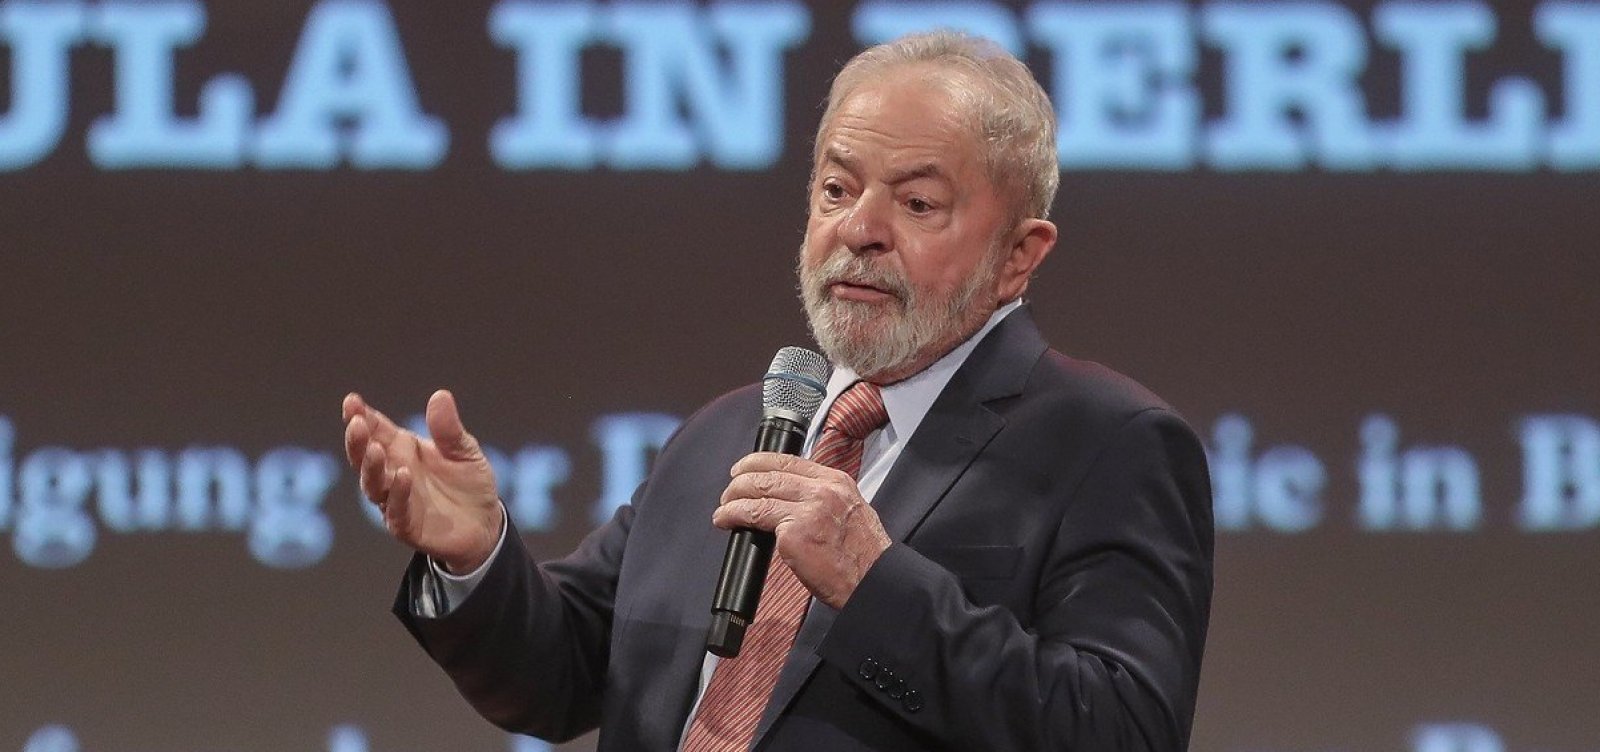 Fachin anula processos contra Lula relacionados à Operação Lava Jato; ex-presidente volta a ser elegível